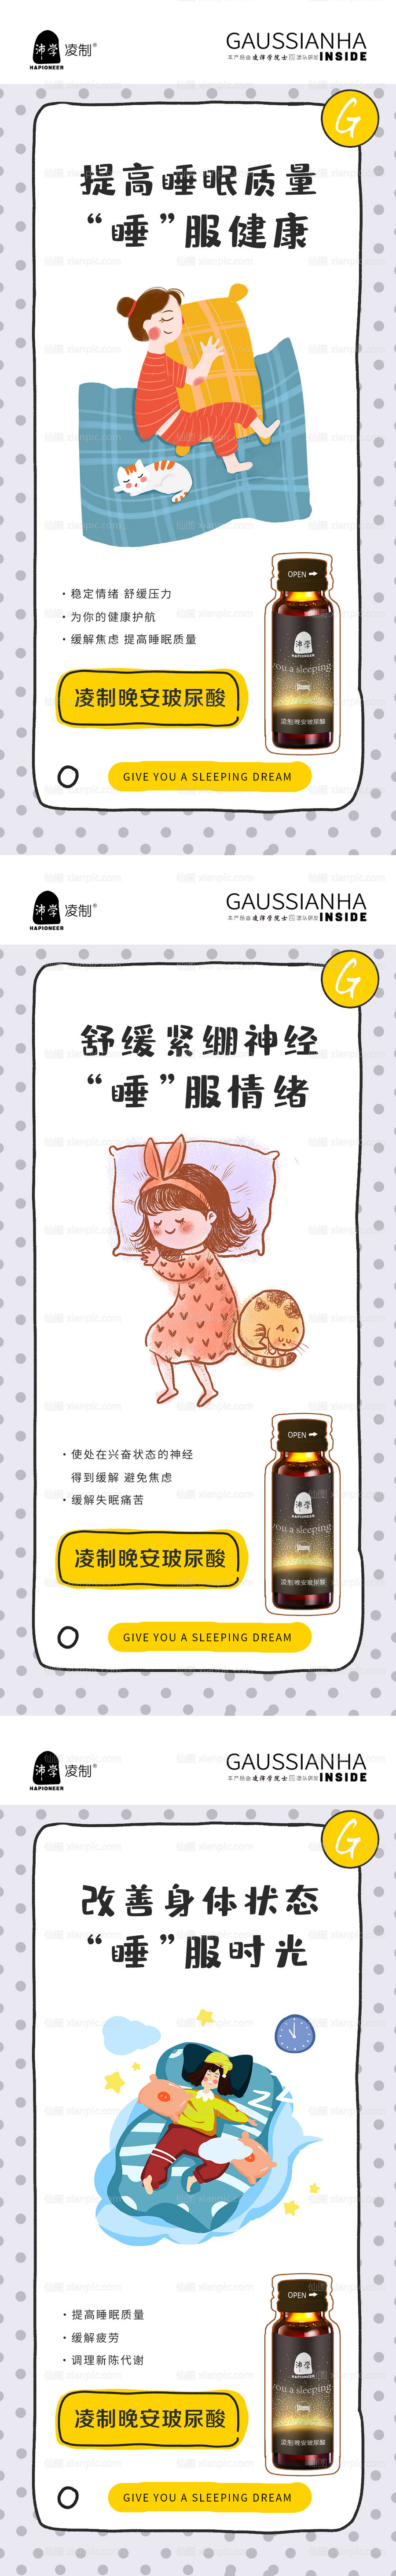 素材乐-品牌睡眠化妆品卡通海报